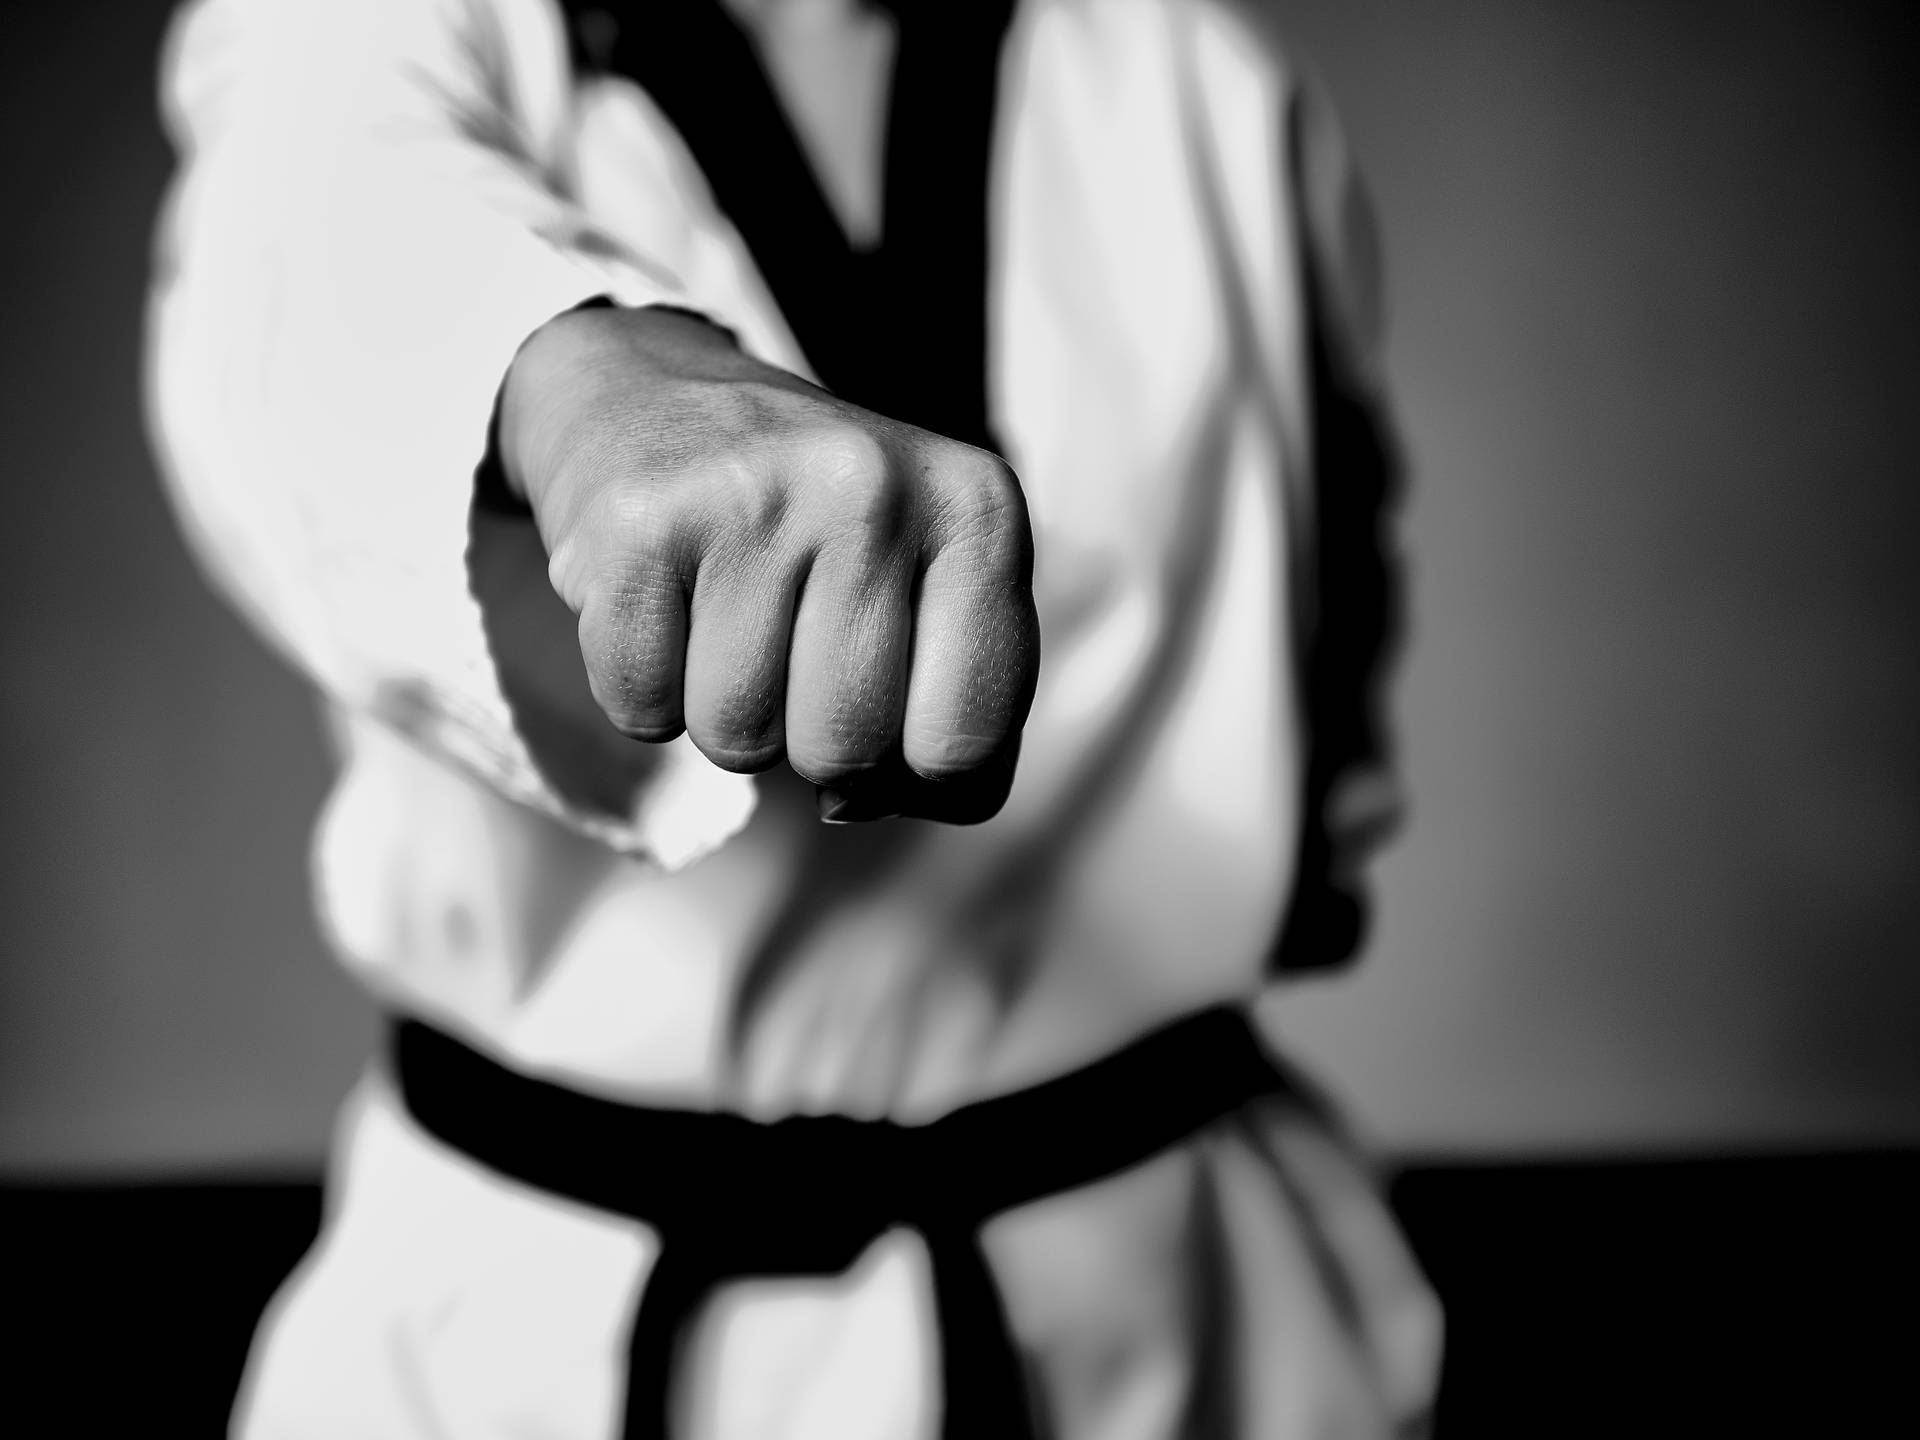 Praticantedi Taekwondo Che Esegue Un Pugno Di Mezz'aria Con La Mano Anteriore In Bianco E Nero Sfondo